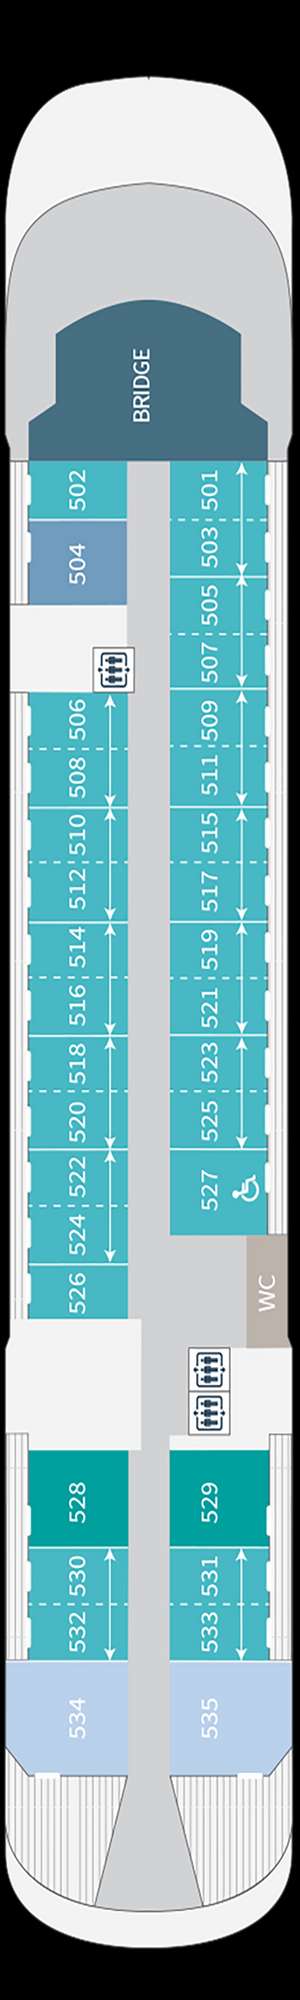 Deck plan for Le Jacques Cartier